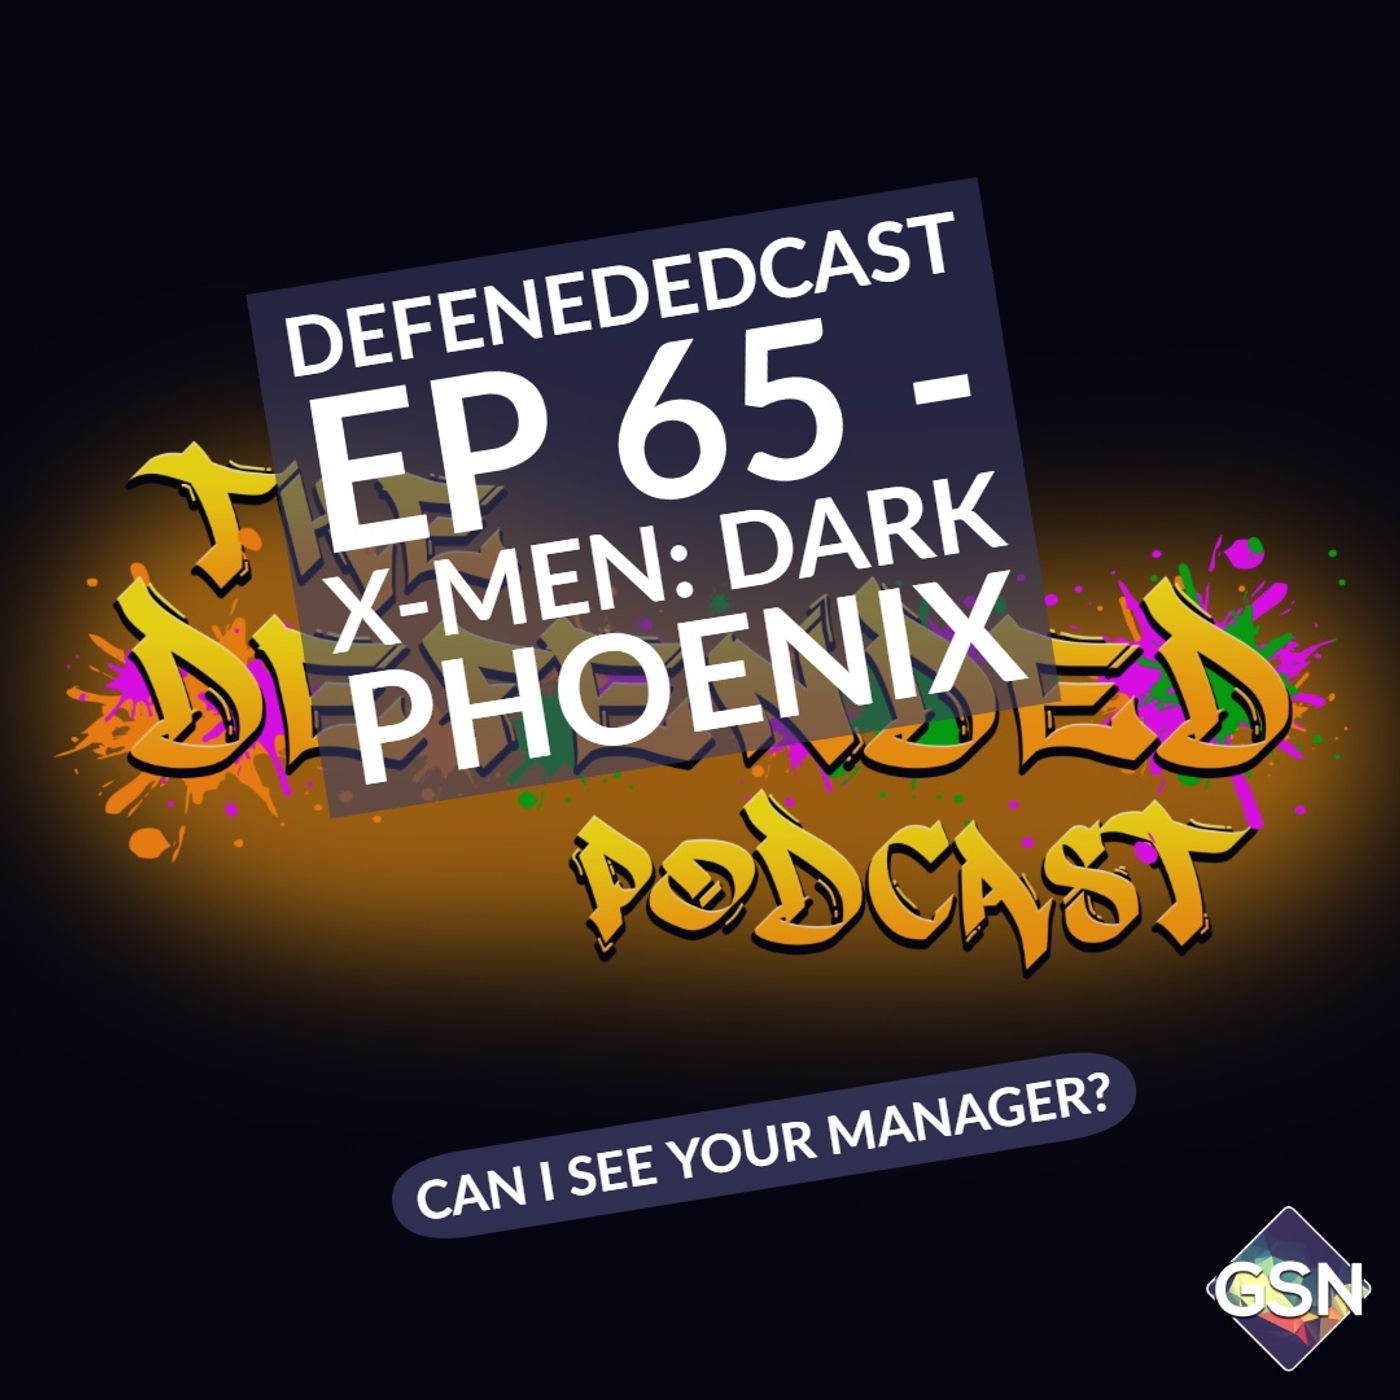 Defendedcast - X-Men Dark Phoenix